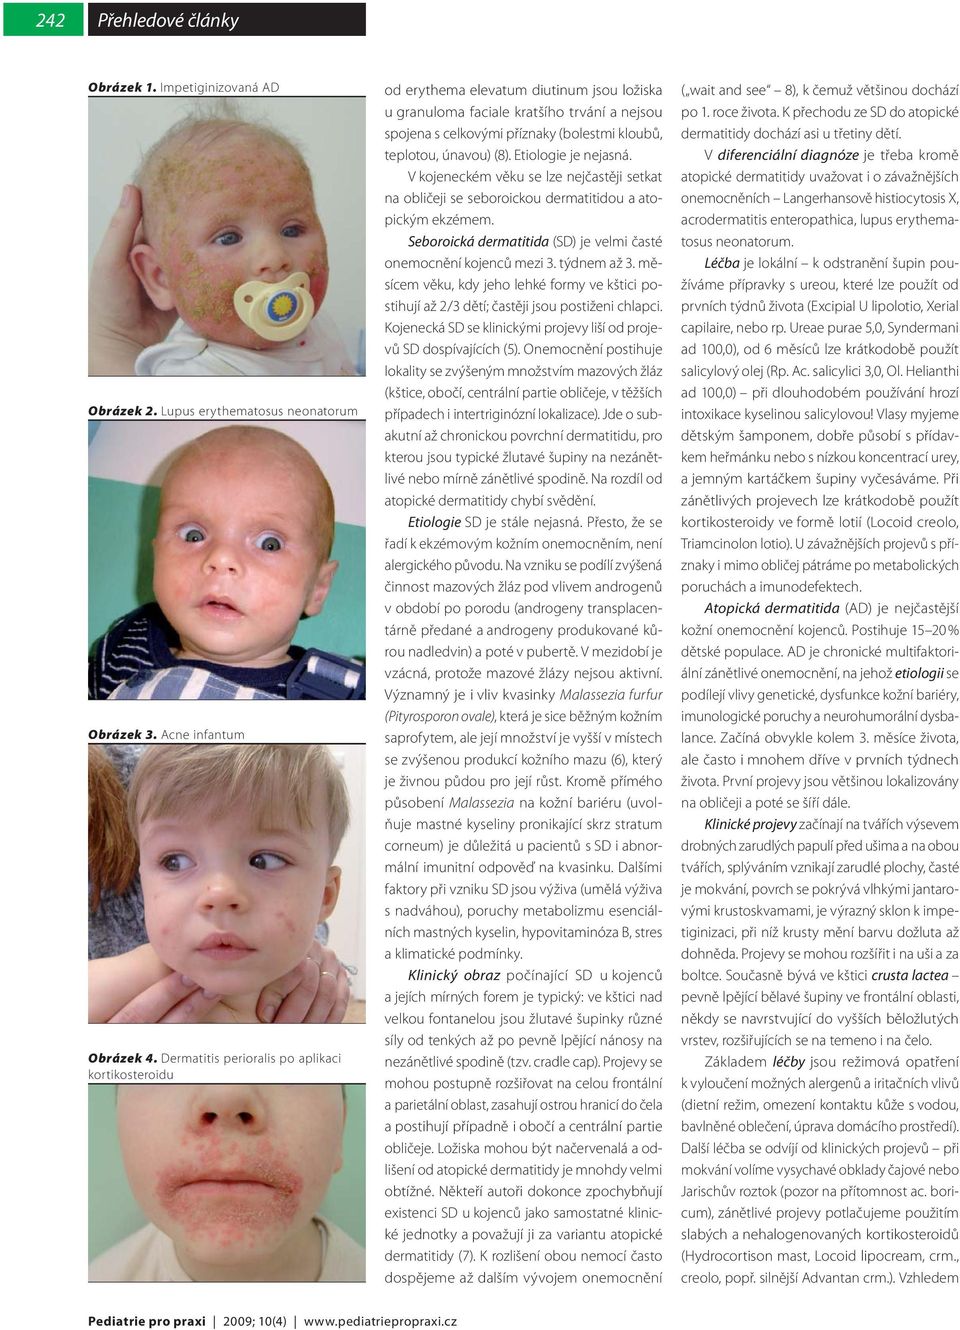 únavou) (8). Etiologie je nejasná. V kojeneckém věku se lze nejčastěji setkat na obličeji se seboroickou dermatitidou a atopickým ekzémem.